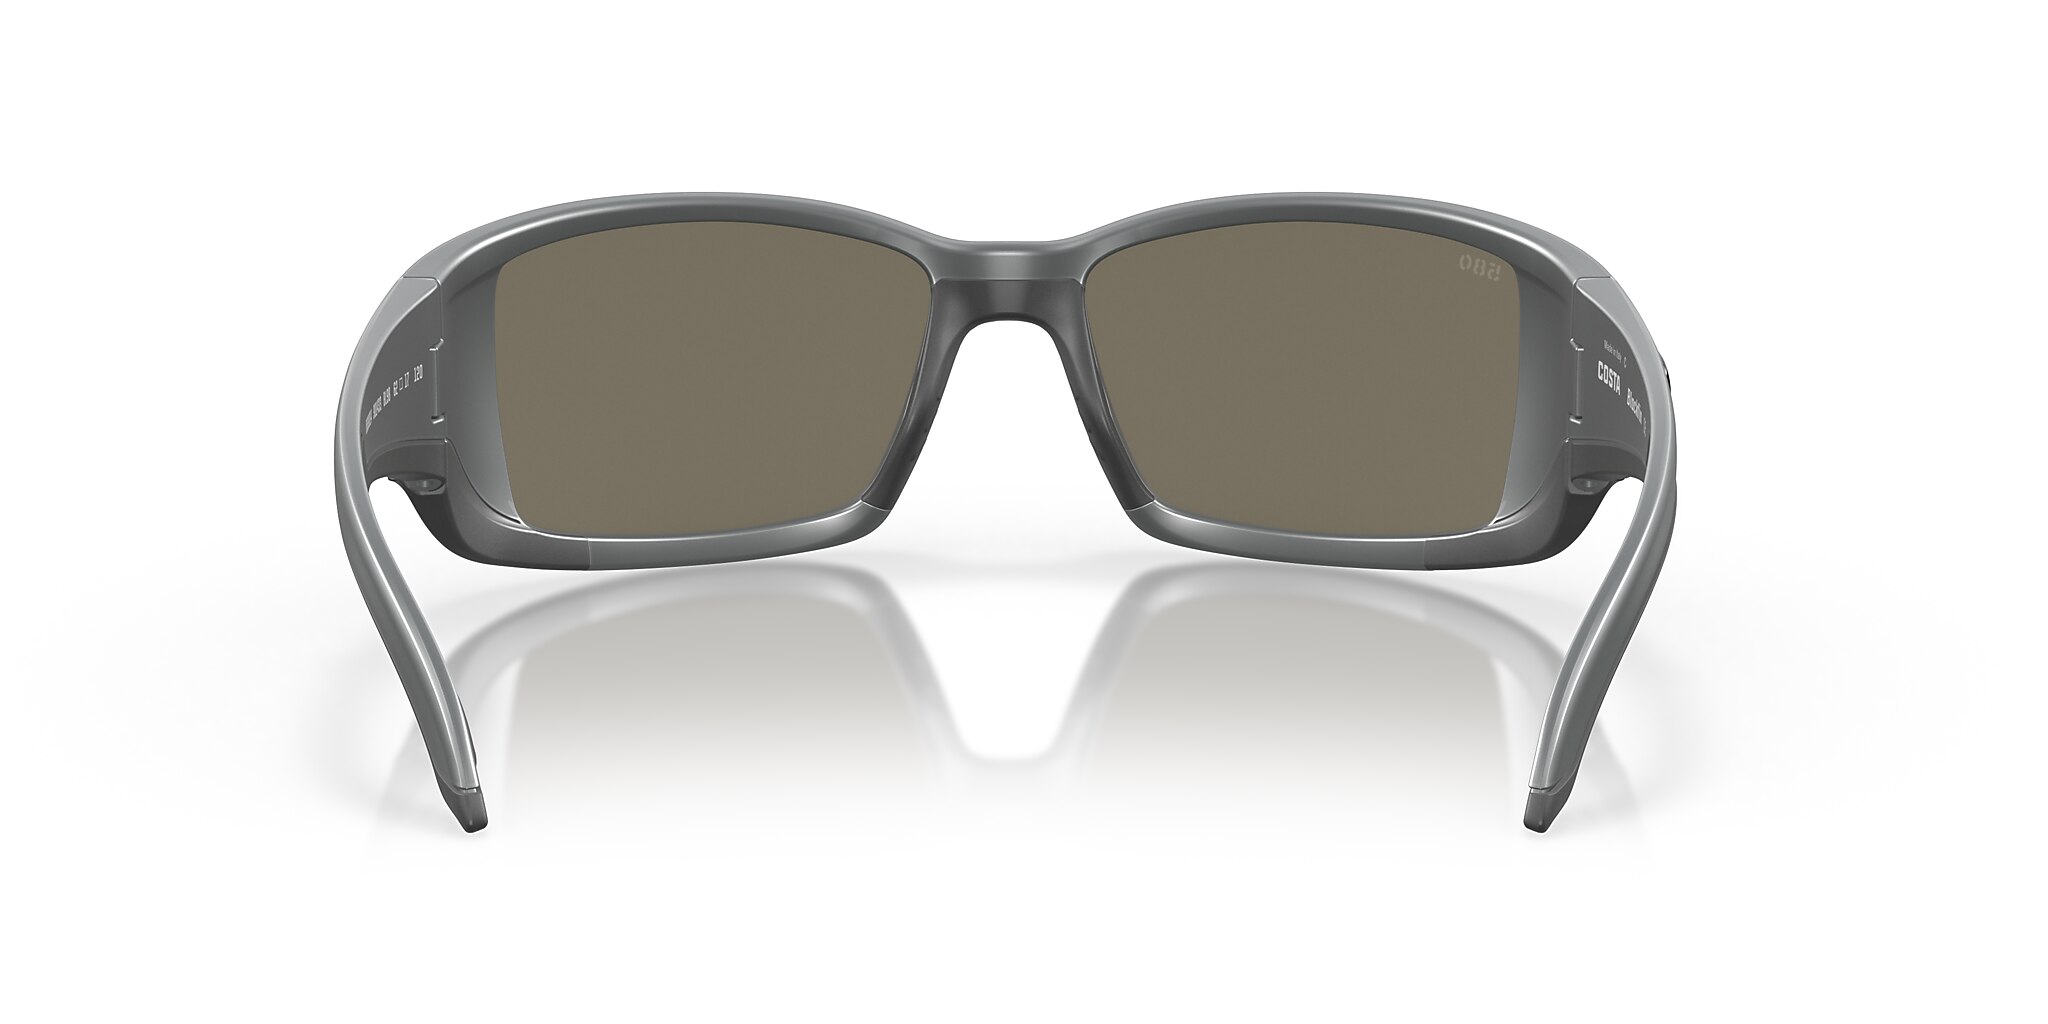 Blackfin Polarized Sunglasses in Blue Mirror | Costa Del Mar®